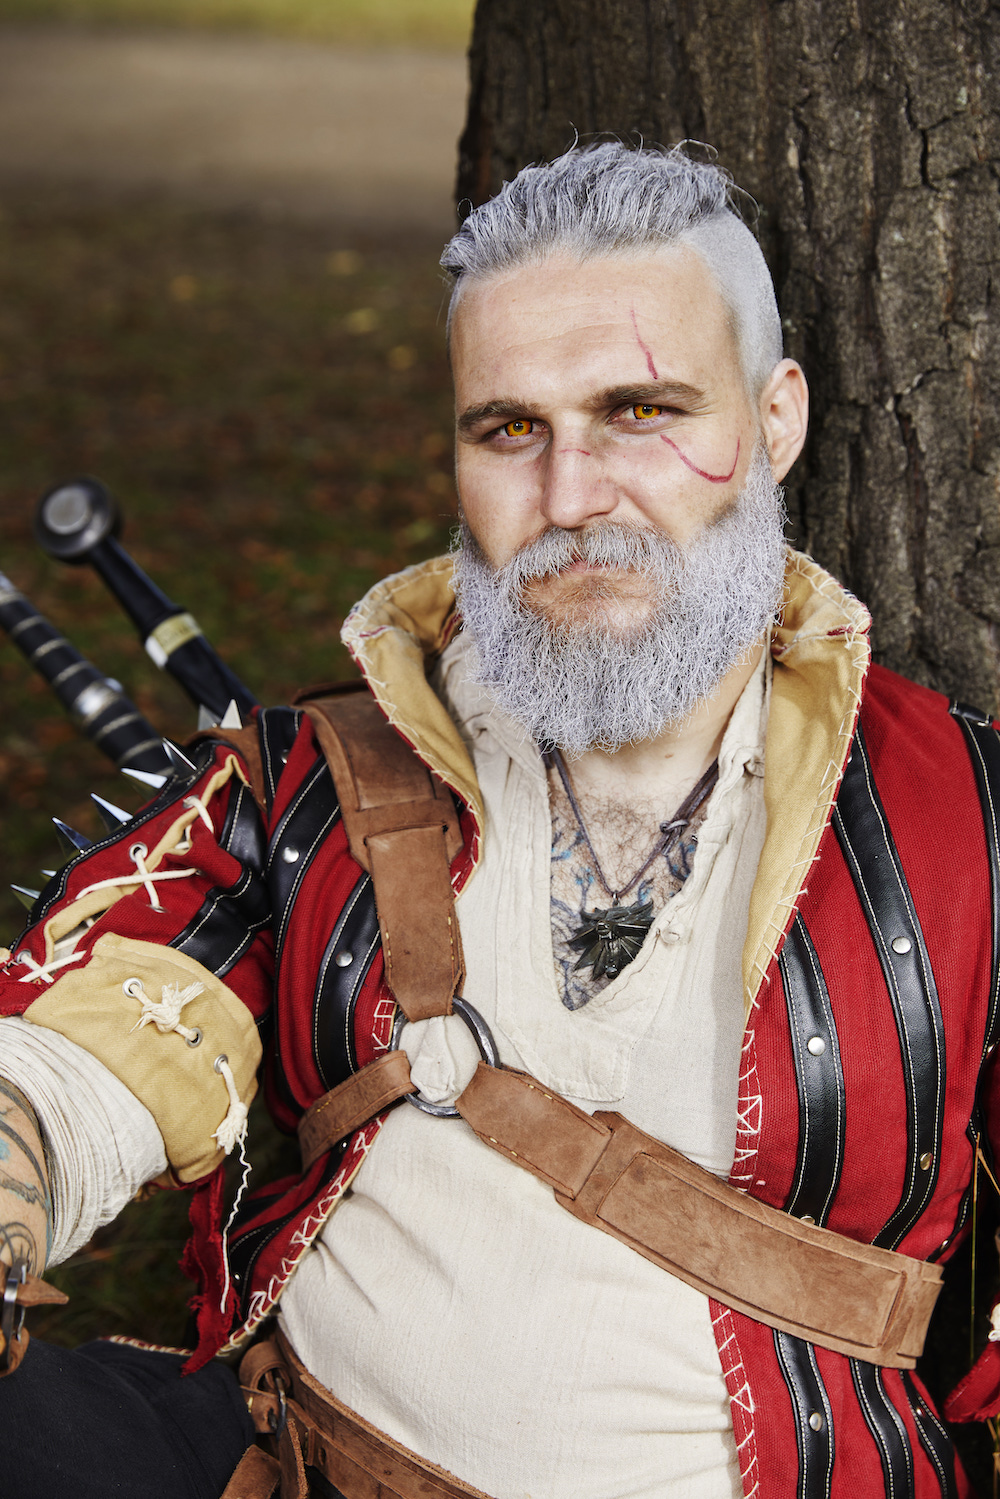 Ein Mann mit weißgefärbten Haaren und Bart und einer aufgemalten Narbe, der ein rot-schwarzes Mittelalteroutfit trägt